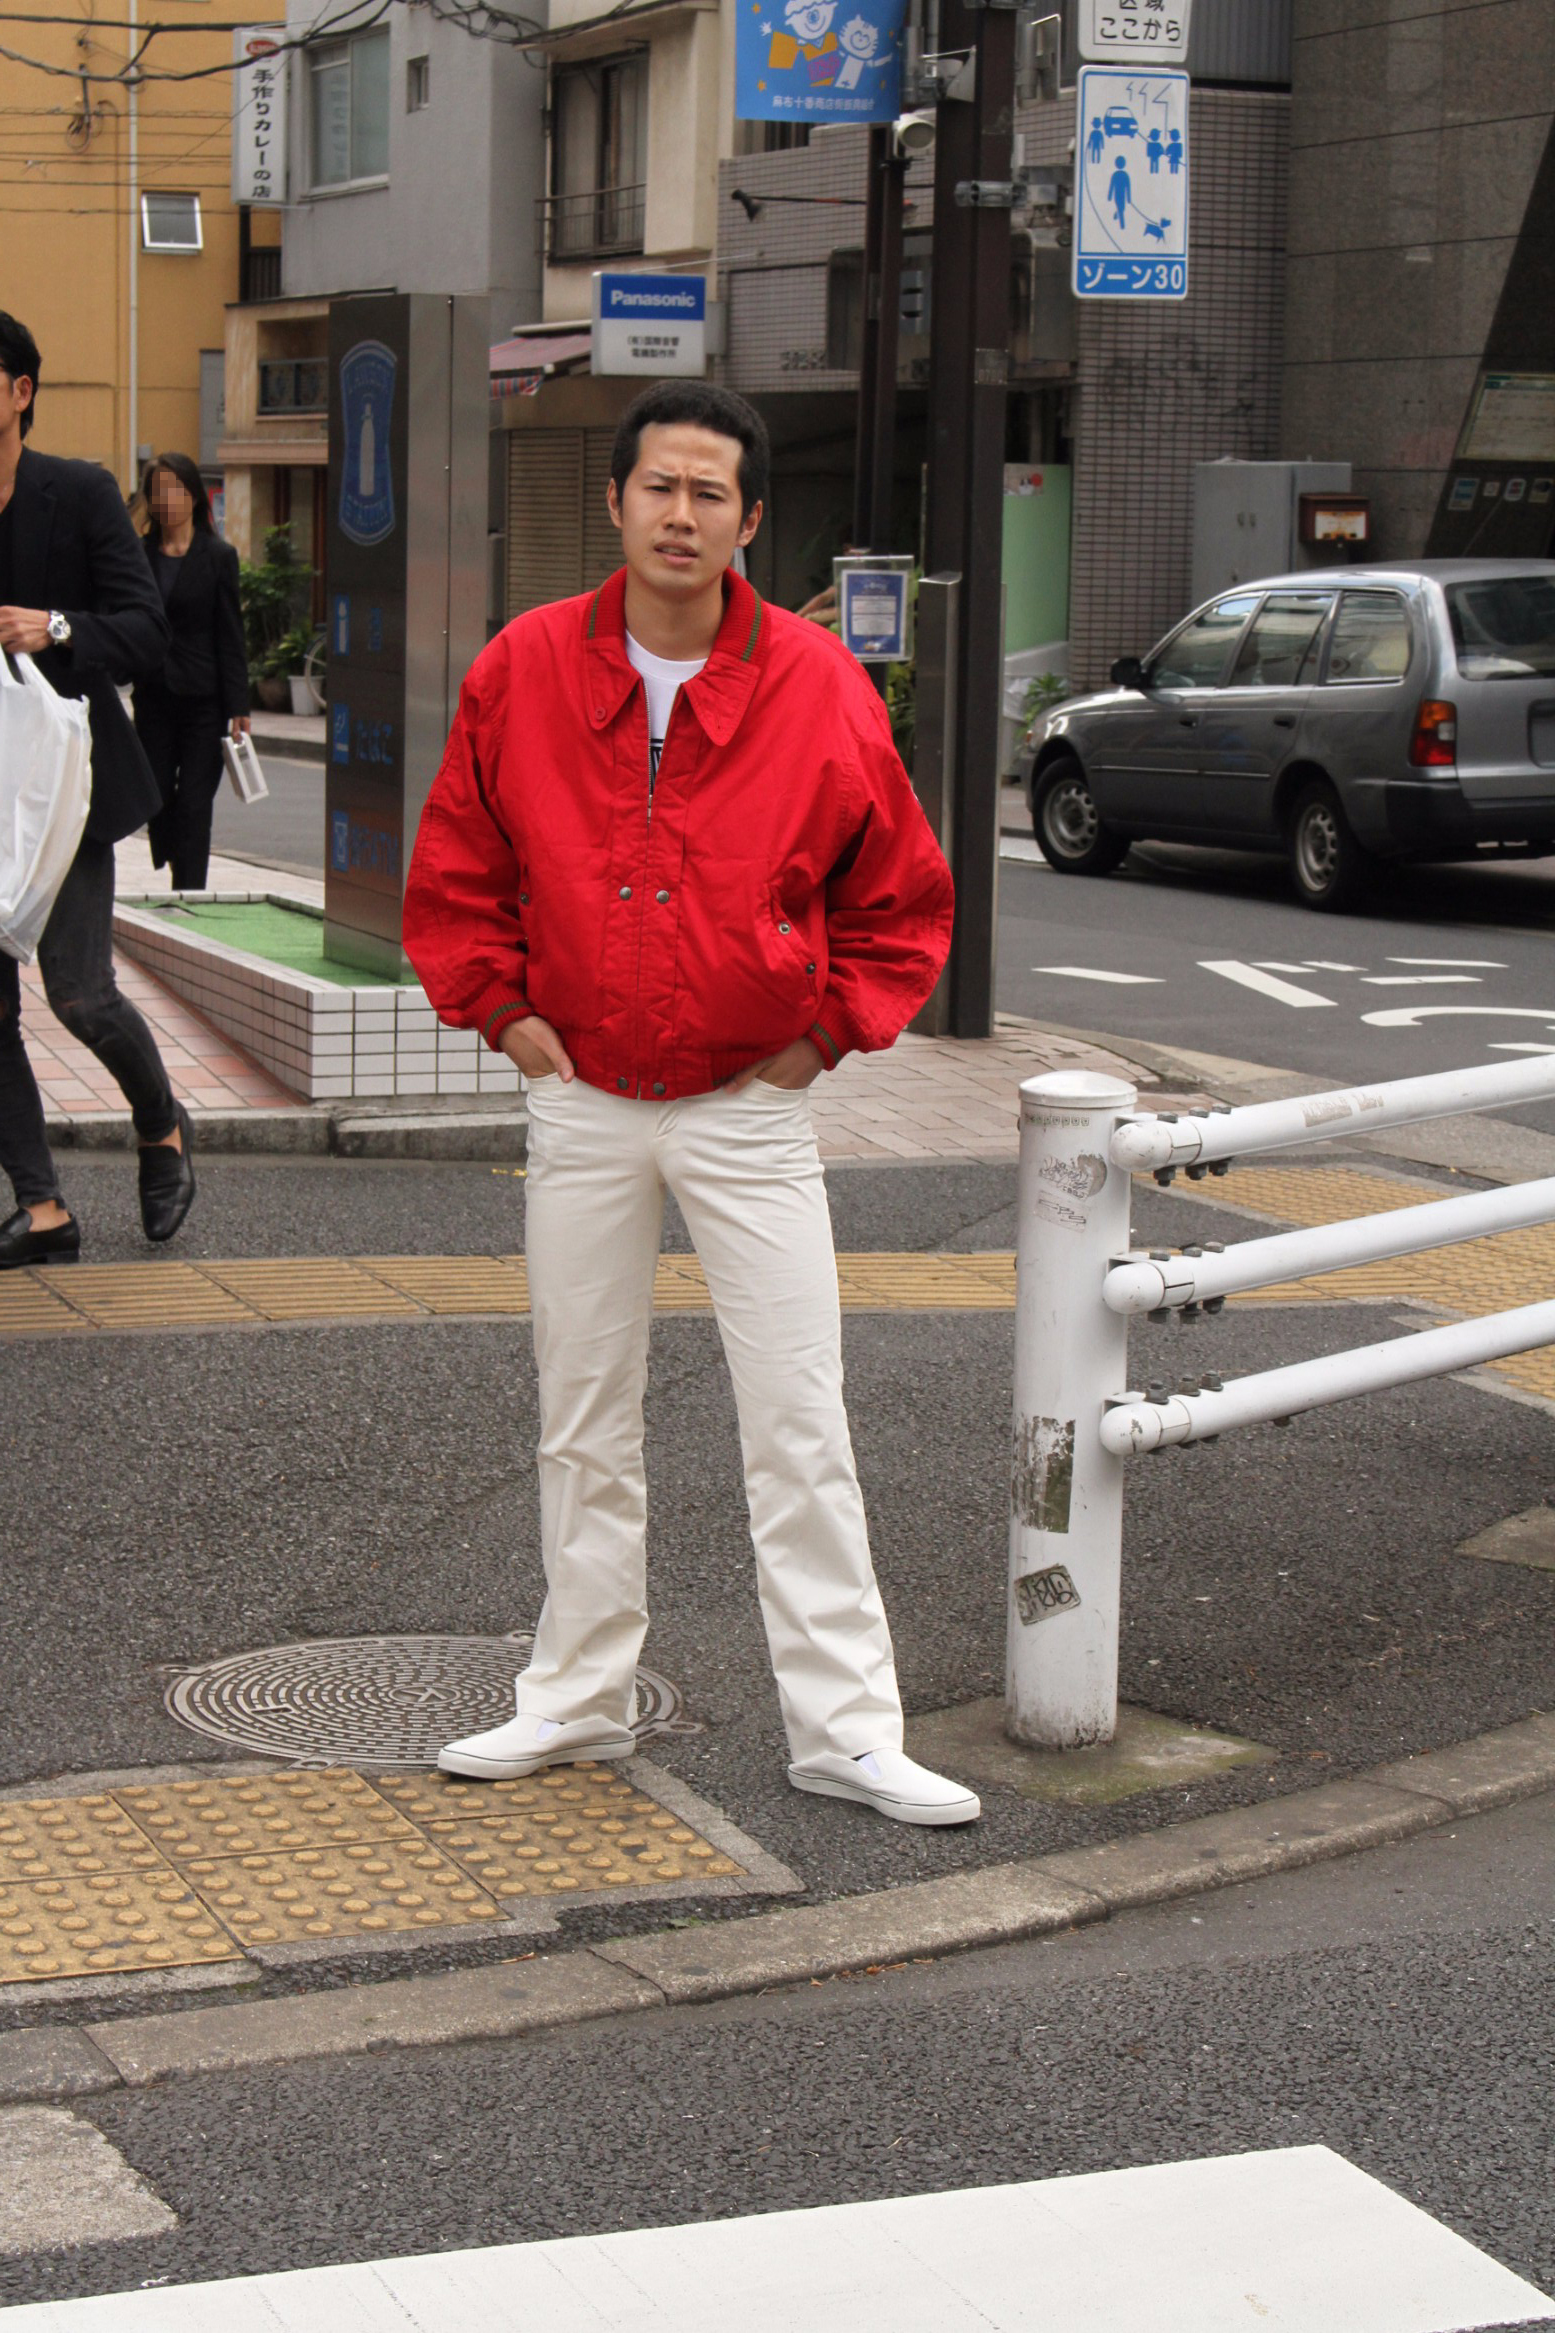 検証 パンチパーマ 昭和の不良ファッションで街を練り歩くとさすがに職質を受けるのか I Q Japan